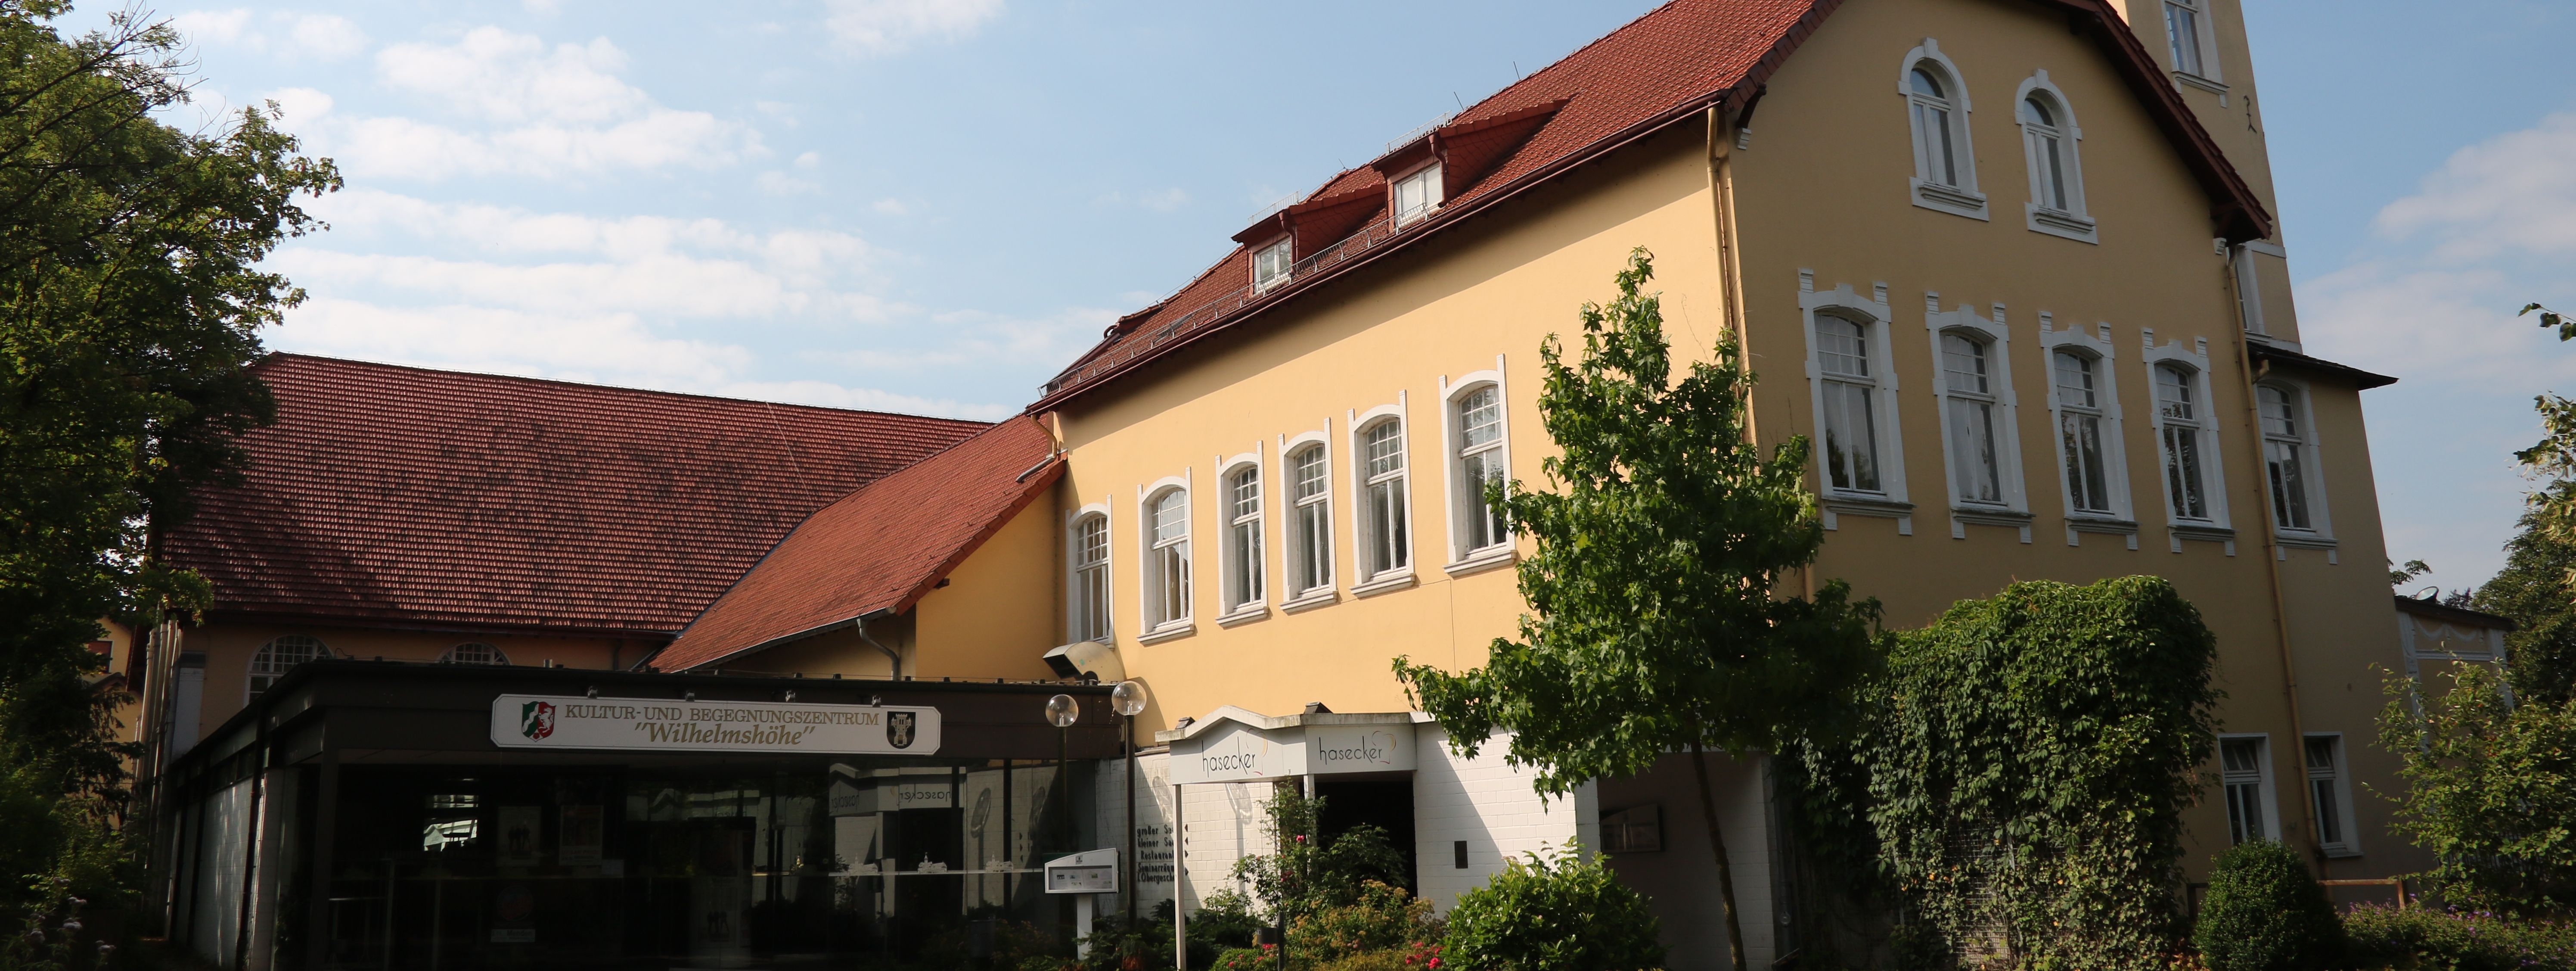 Der städtische Saalbetrieb: die Wilhelmshöhe Menden. Das Gebäude ist in hellem Gelb gestrichen, hat ein rotes Dach und Türmchen.